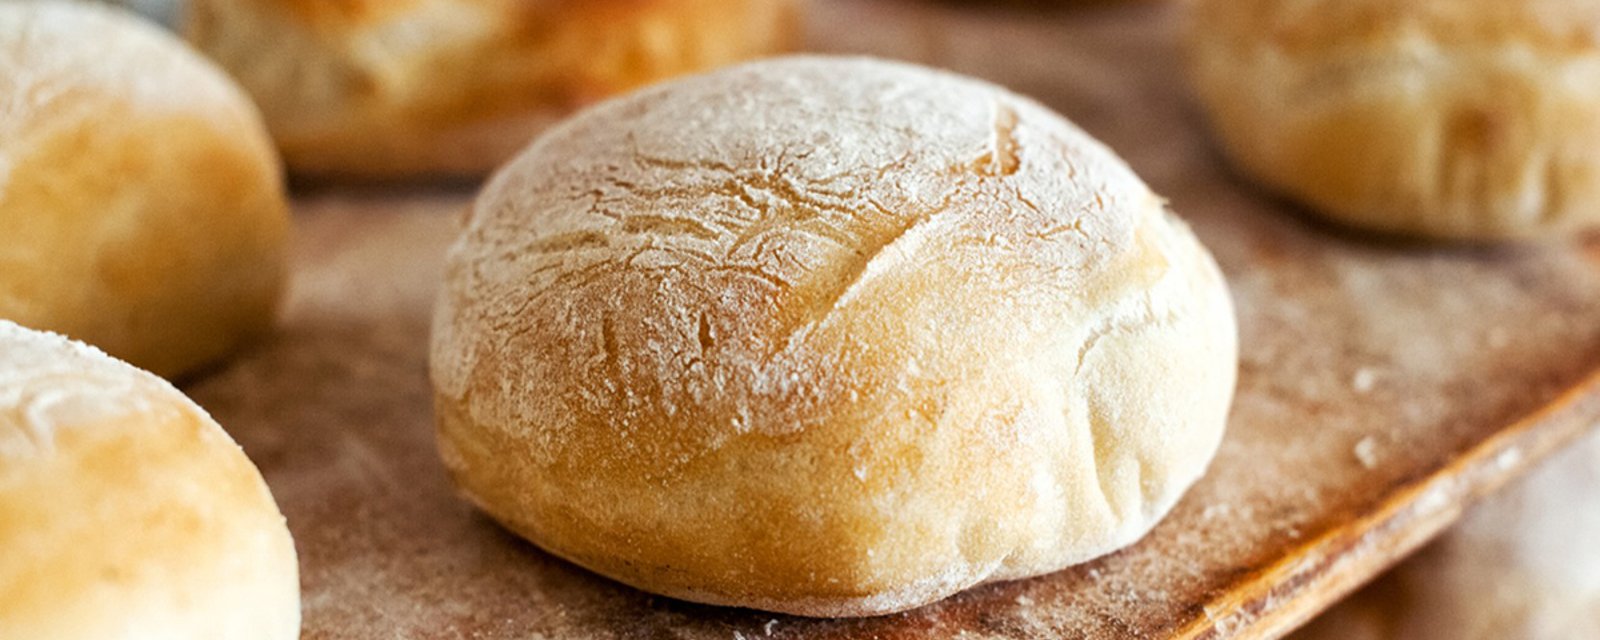 Vous n'avez qu'à combiner 6 ingrédients dans votre mijoteuse pour obtenir une heure plus tard un savoureux pain maison